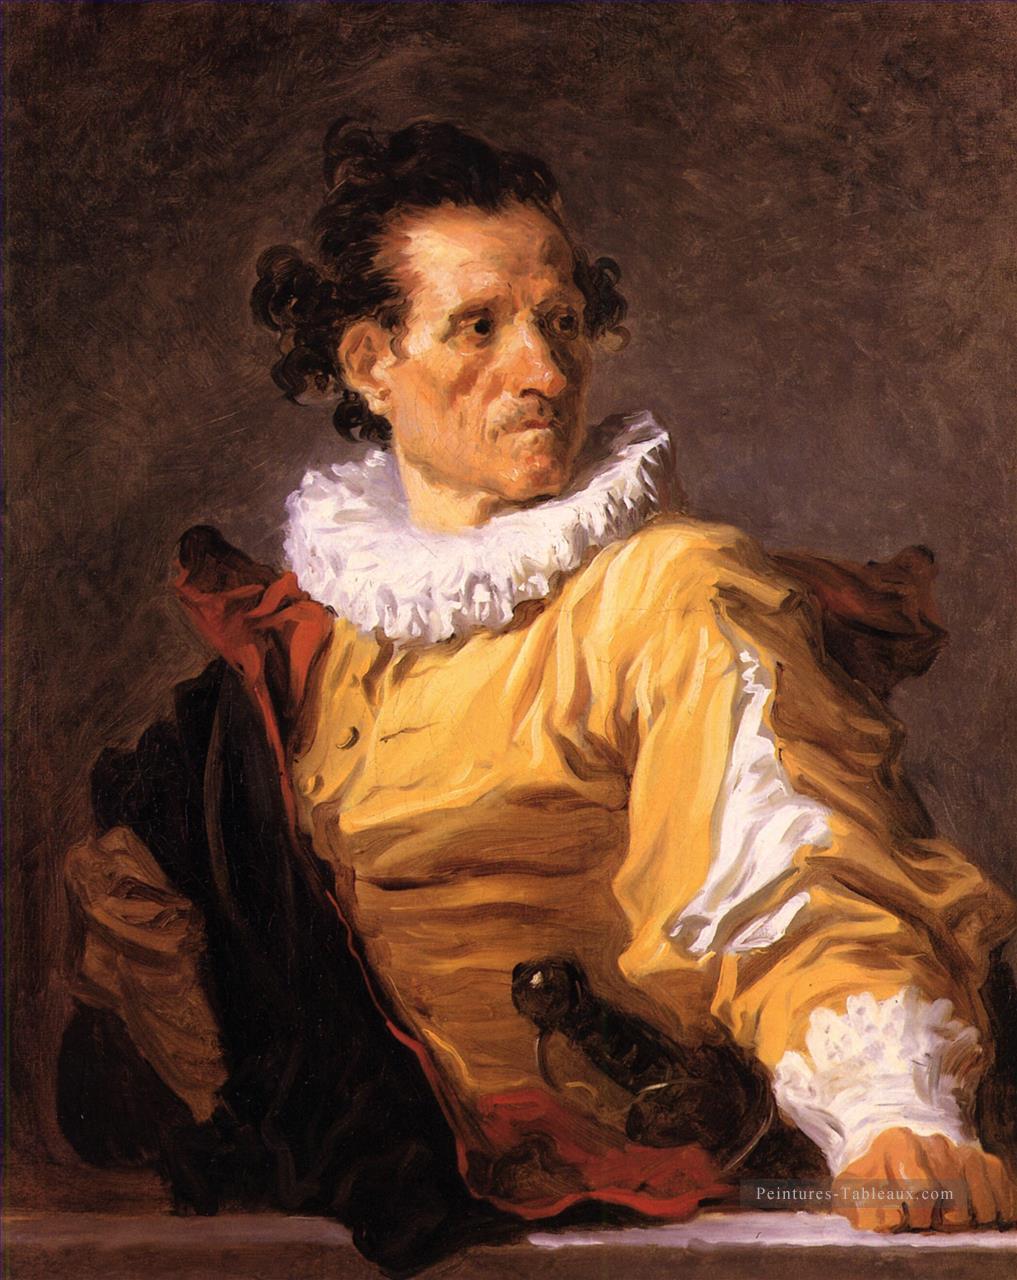 Portrait d’un homme appelé le guerrier Jean Honoré Fragonard Peintures à l'huile